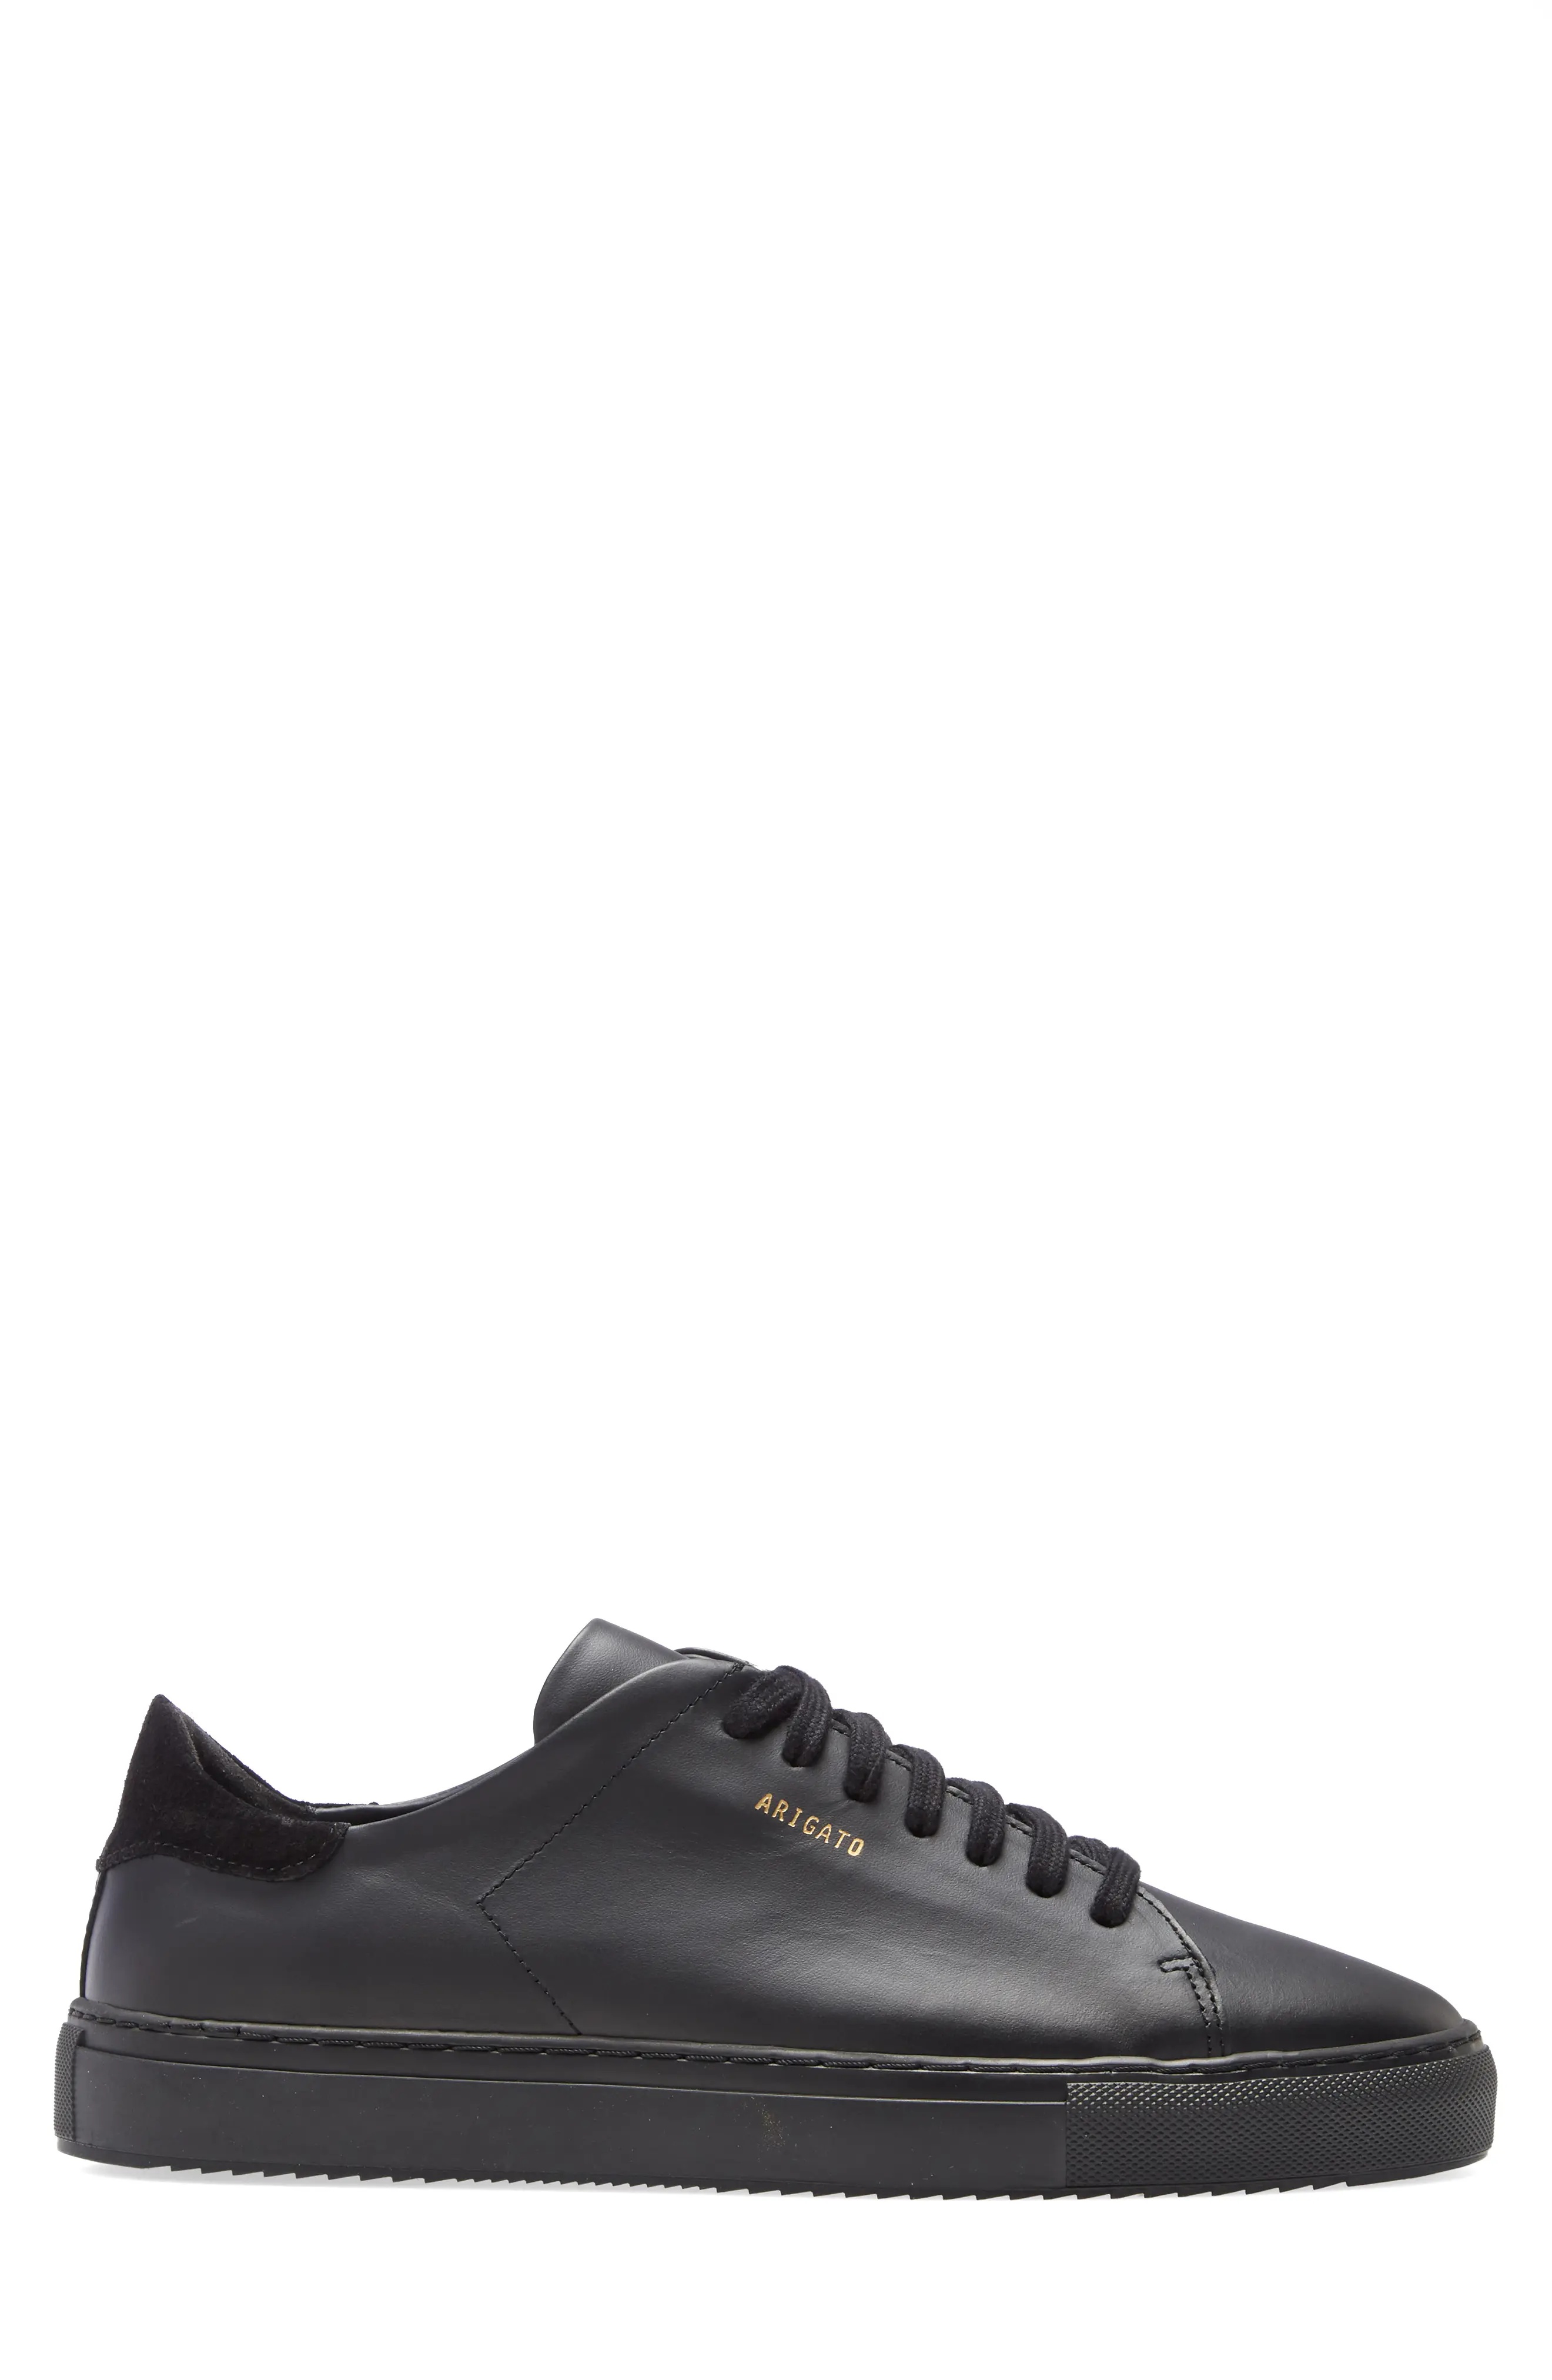 Clean 90 Sneaker in Black/Black Leather - 3